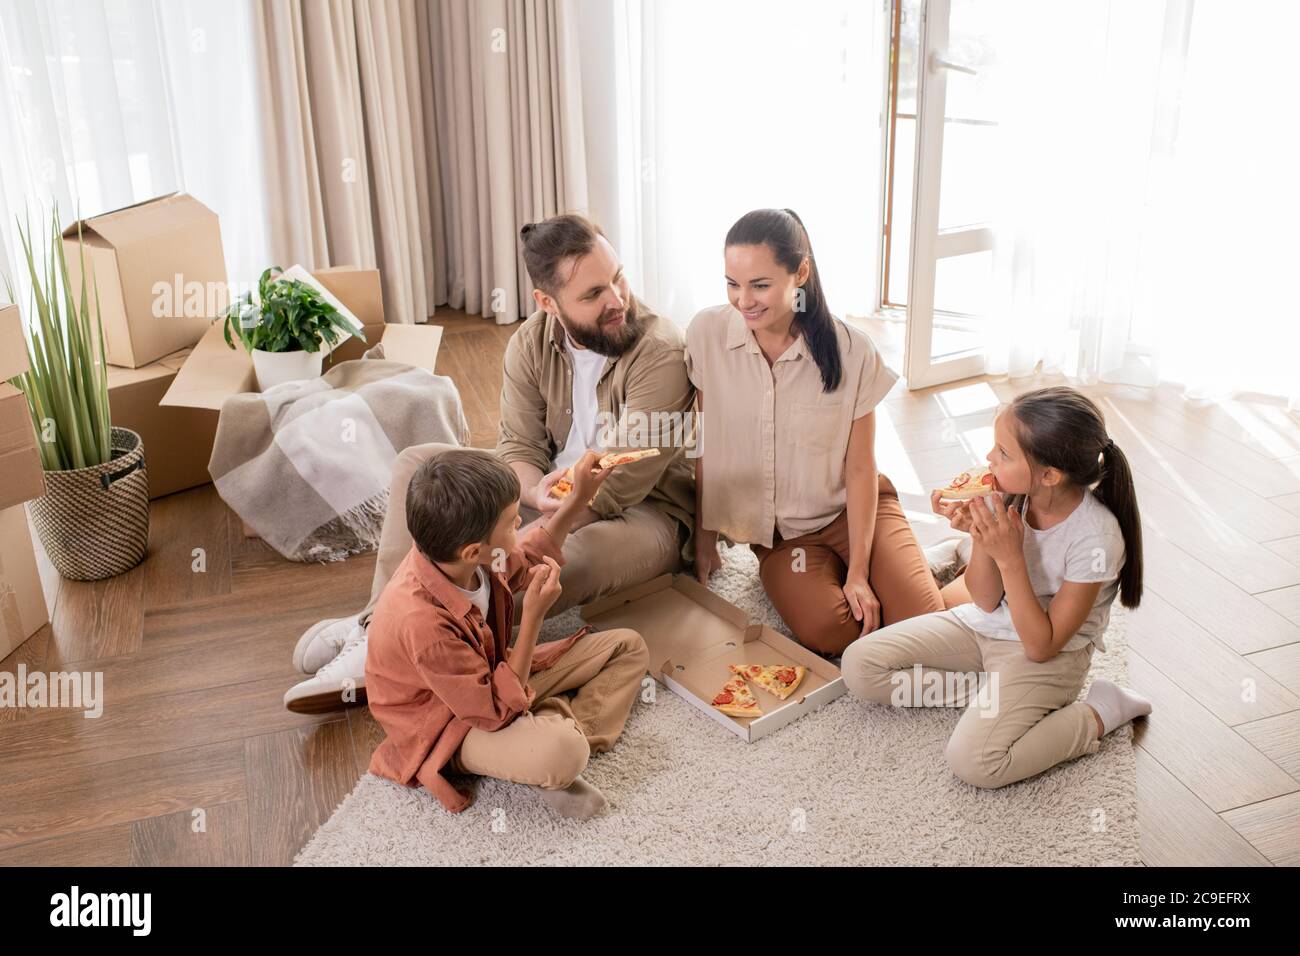 Oben Blick auf glückliche junge Familie mit zwei Kindern auf dem Boden sitzen und genießen erstes Abendessen im neuen Haus Stockfoto